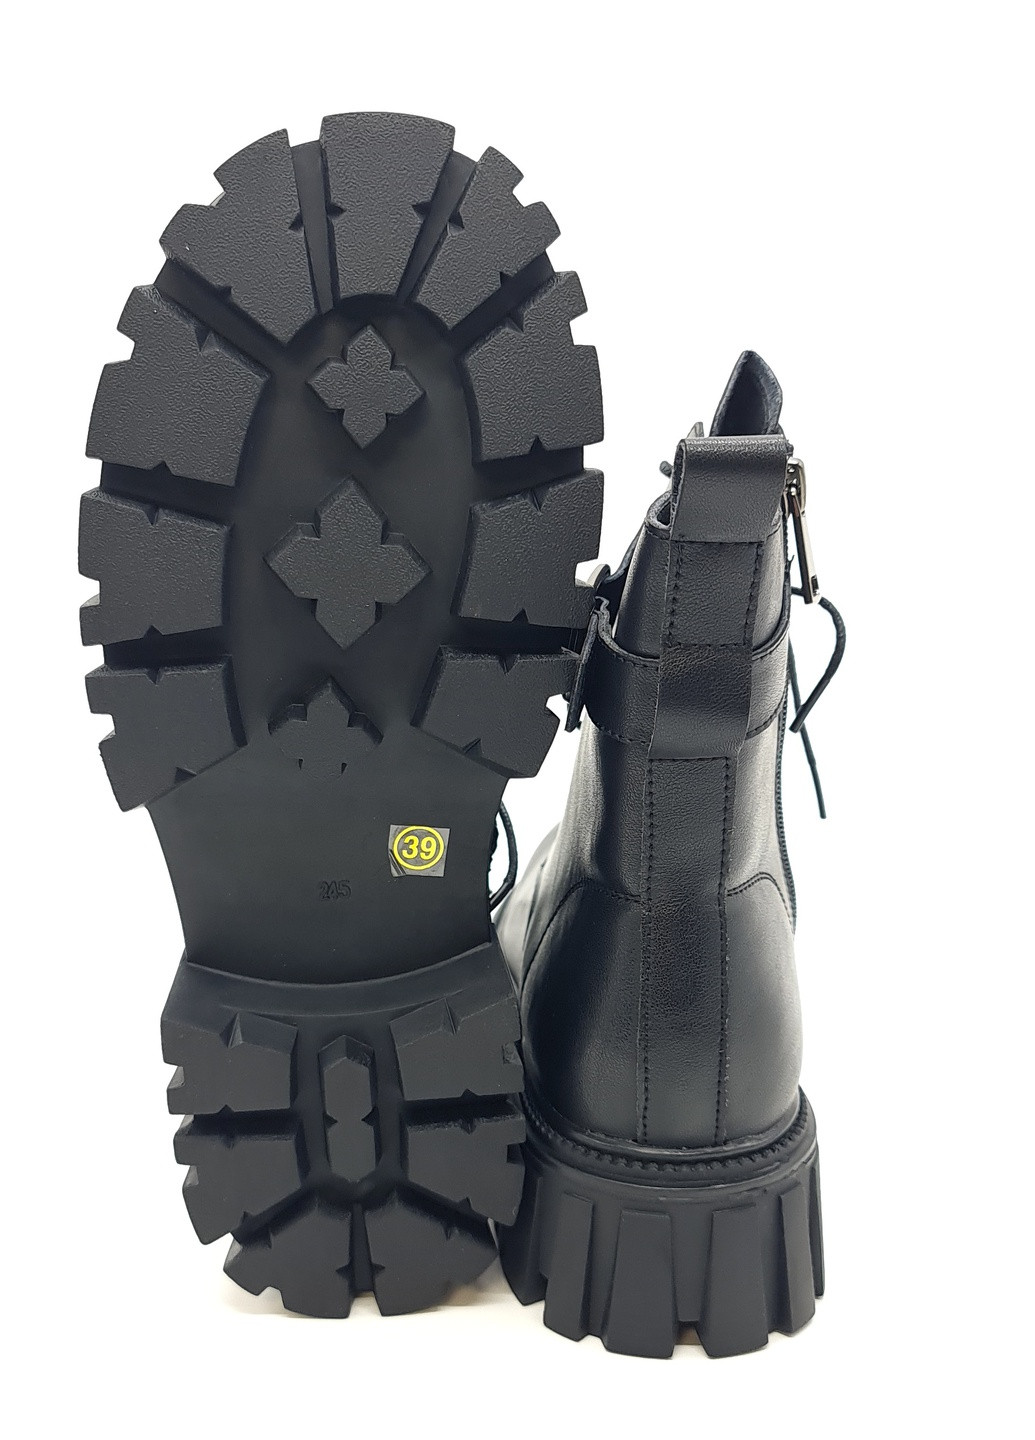 Осенние женские ботинки черные кожаные ya-12-3 23 см (р) Yalasou